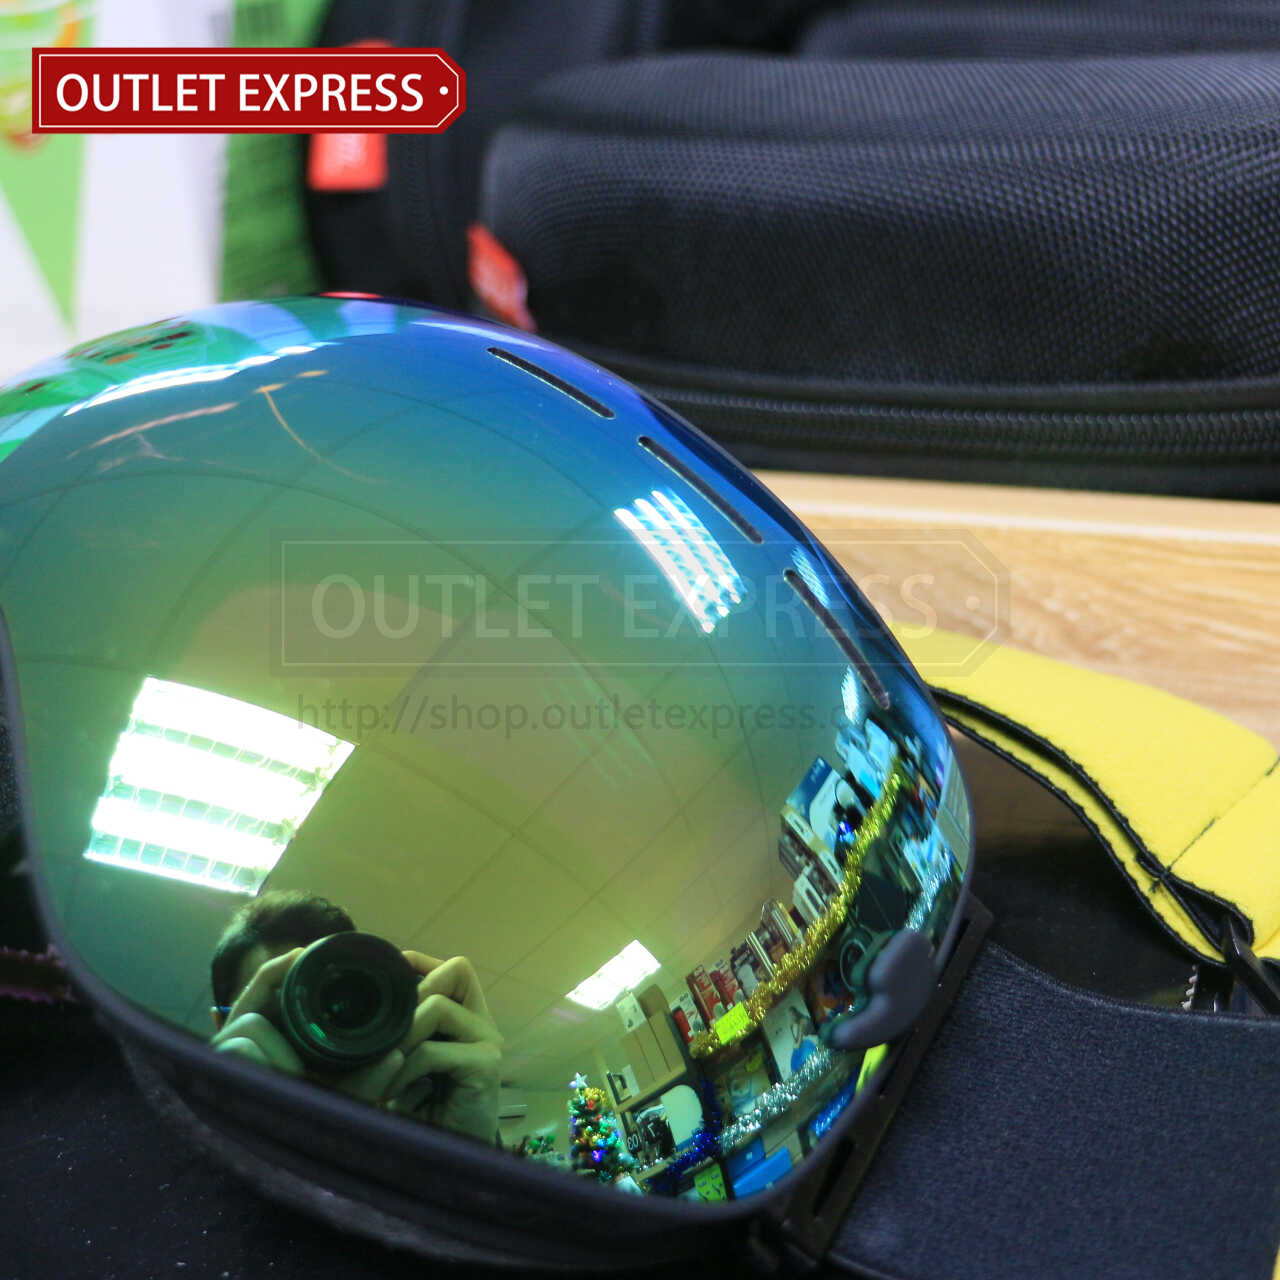 BENICE 大球面雙層防霧滑雪鏡 | 可配合眼鏡用 -Outlet Express HK生活百貨城實拍相片